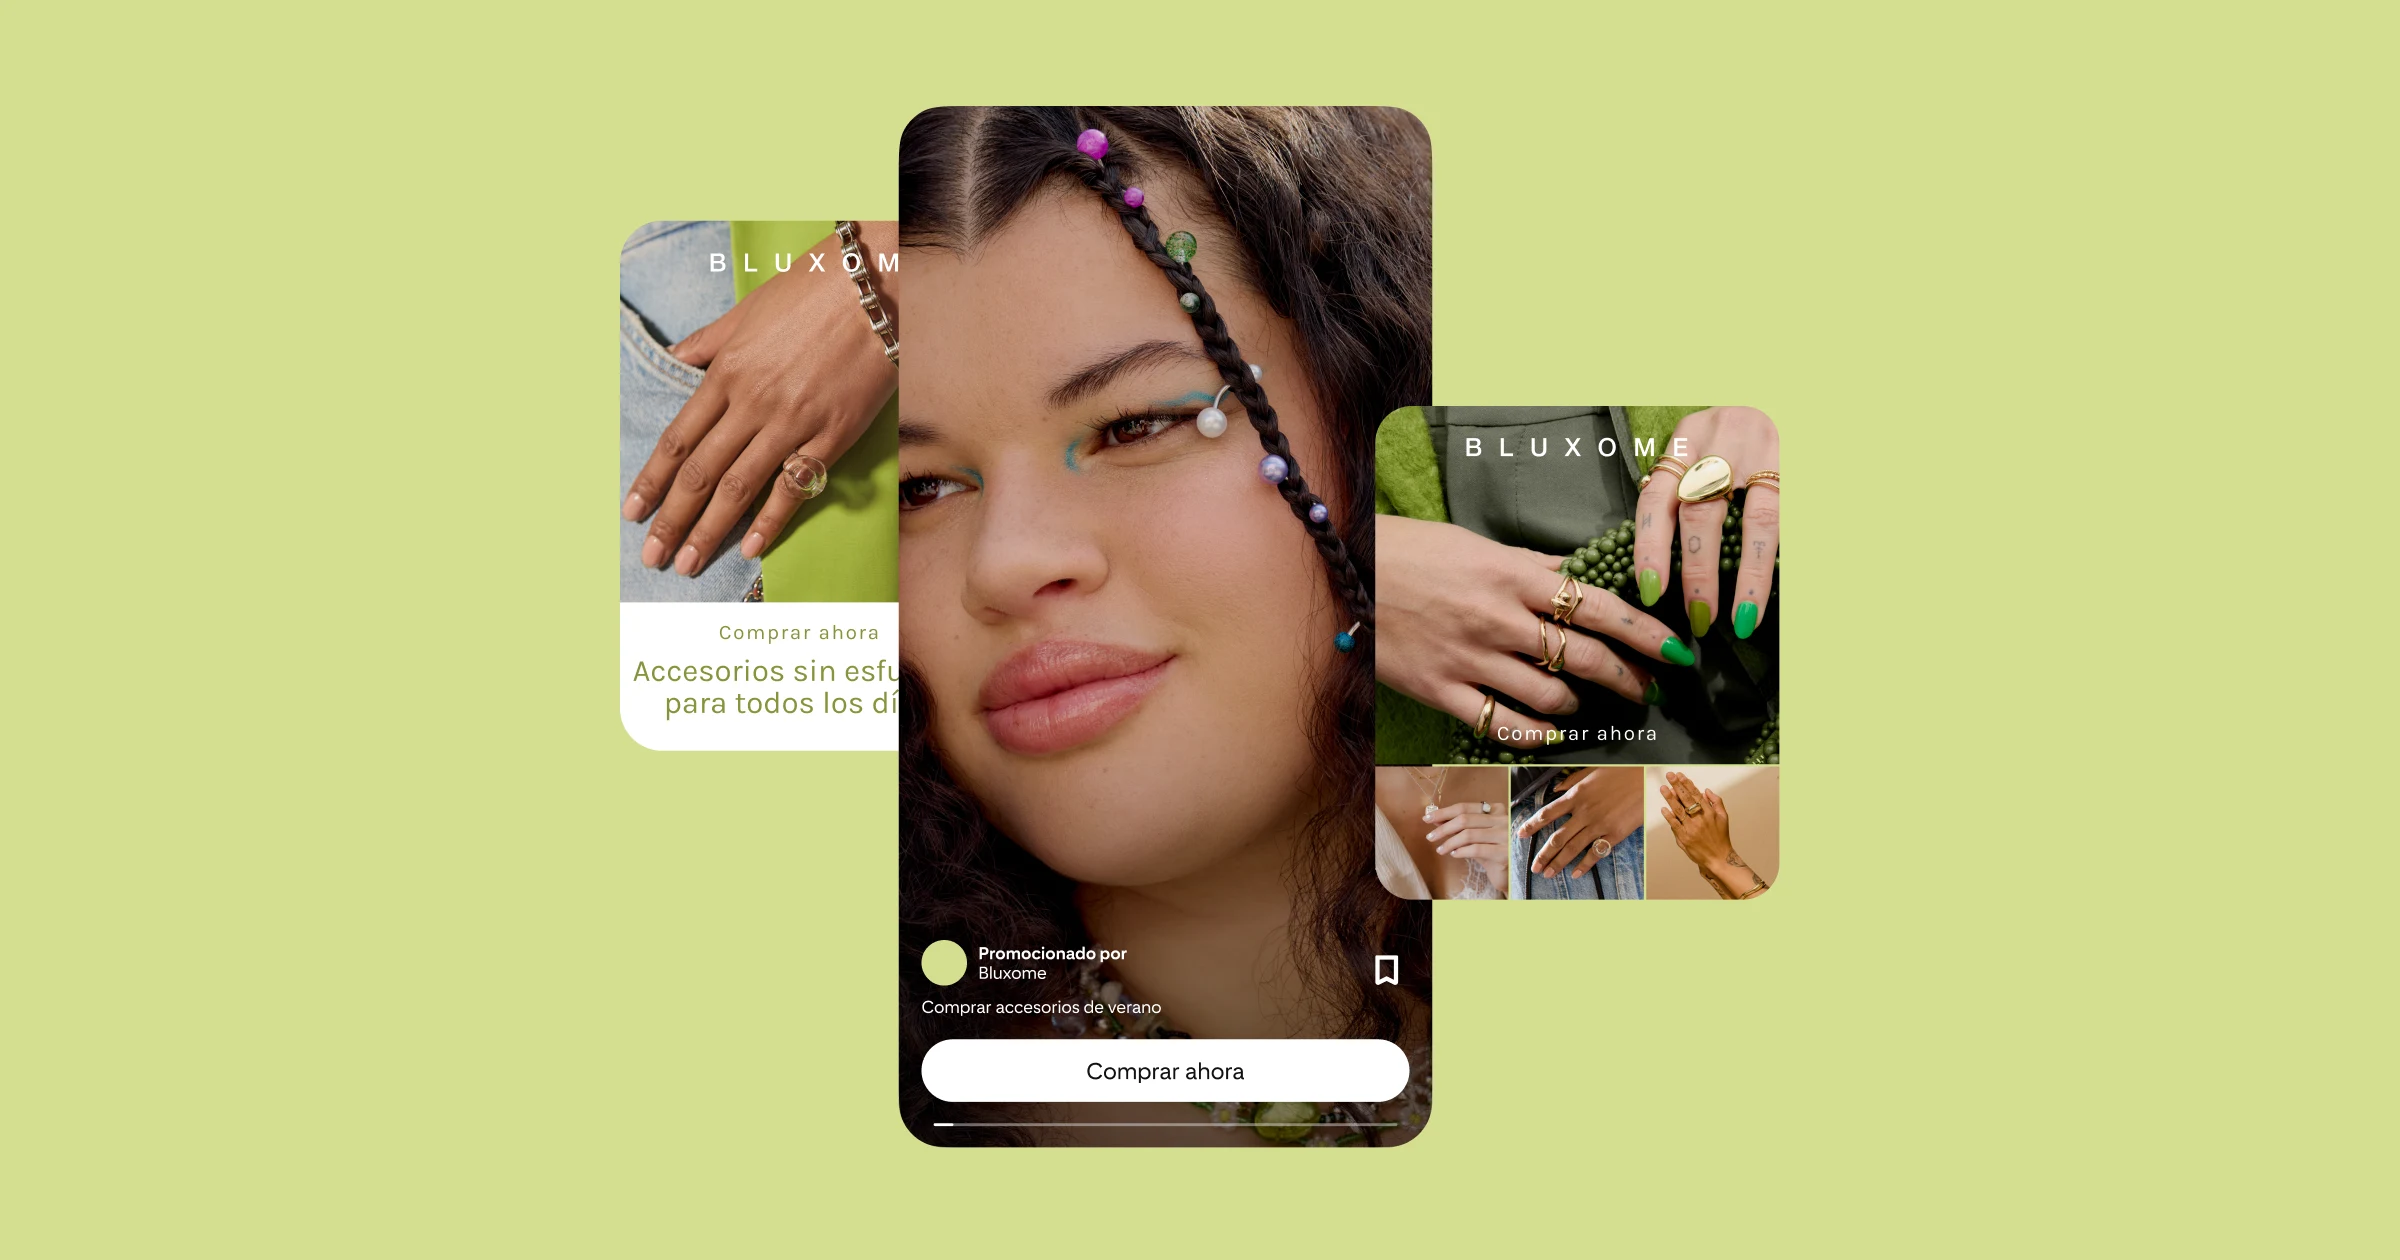 Tres anuncios sobre un fondo verde: el primero muestra una mano con una pulsera y un anillo en el bolsillo de unos jeans; el segundo muestra en close-up la cara de una mujer con trenzas y accesorios; el tercero muestra cuatro imágenes de anillos.